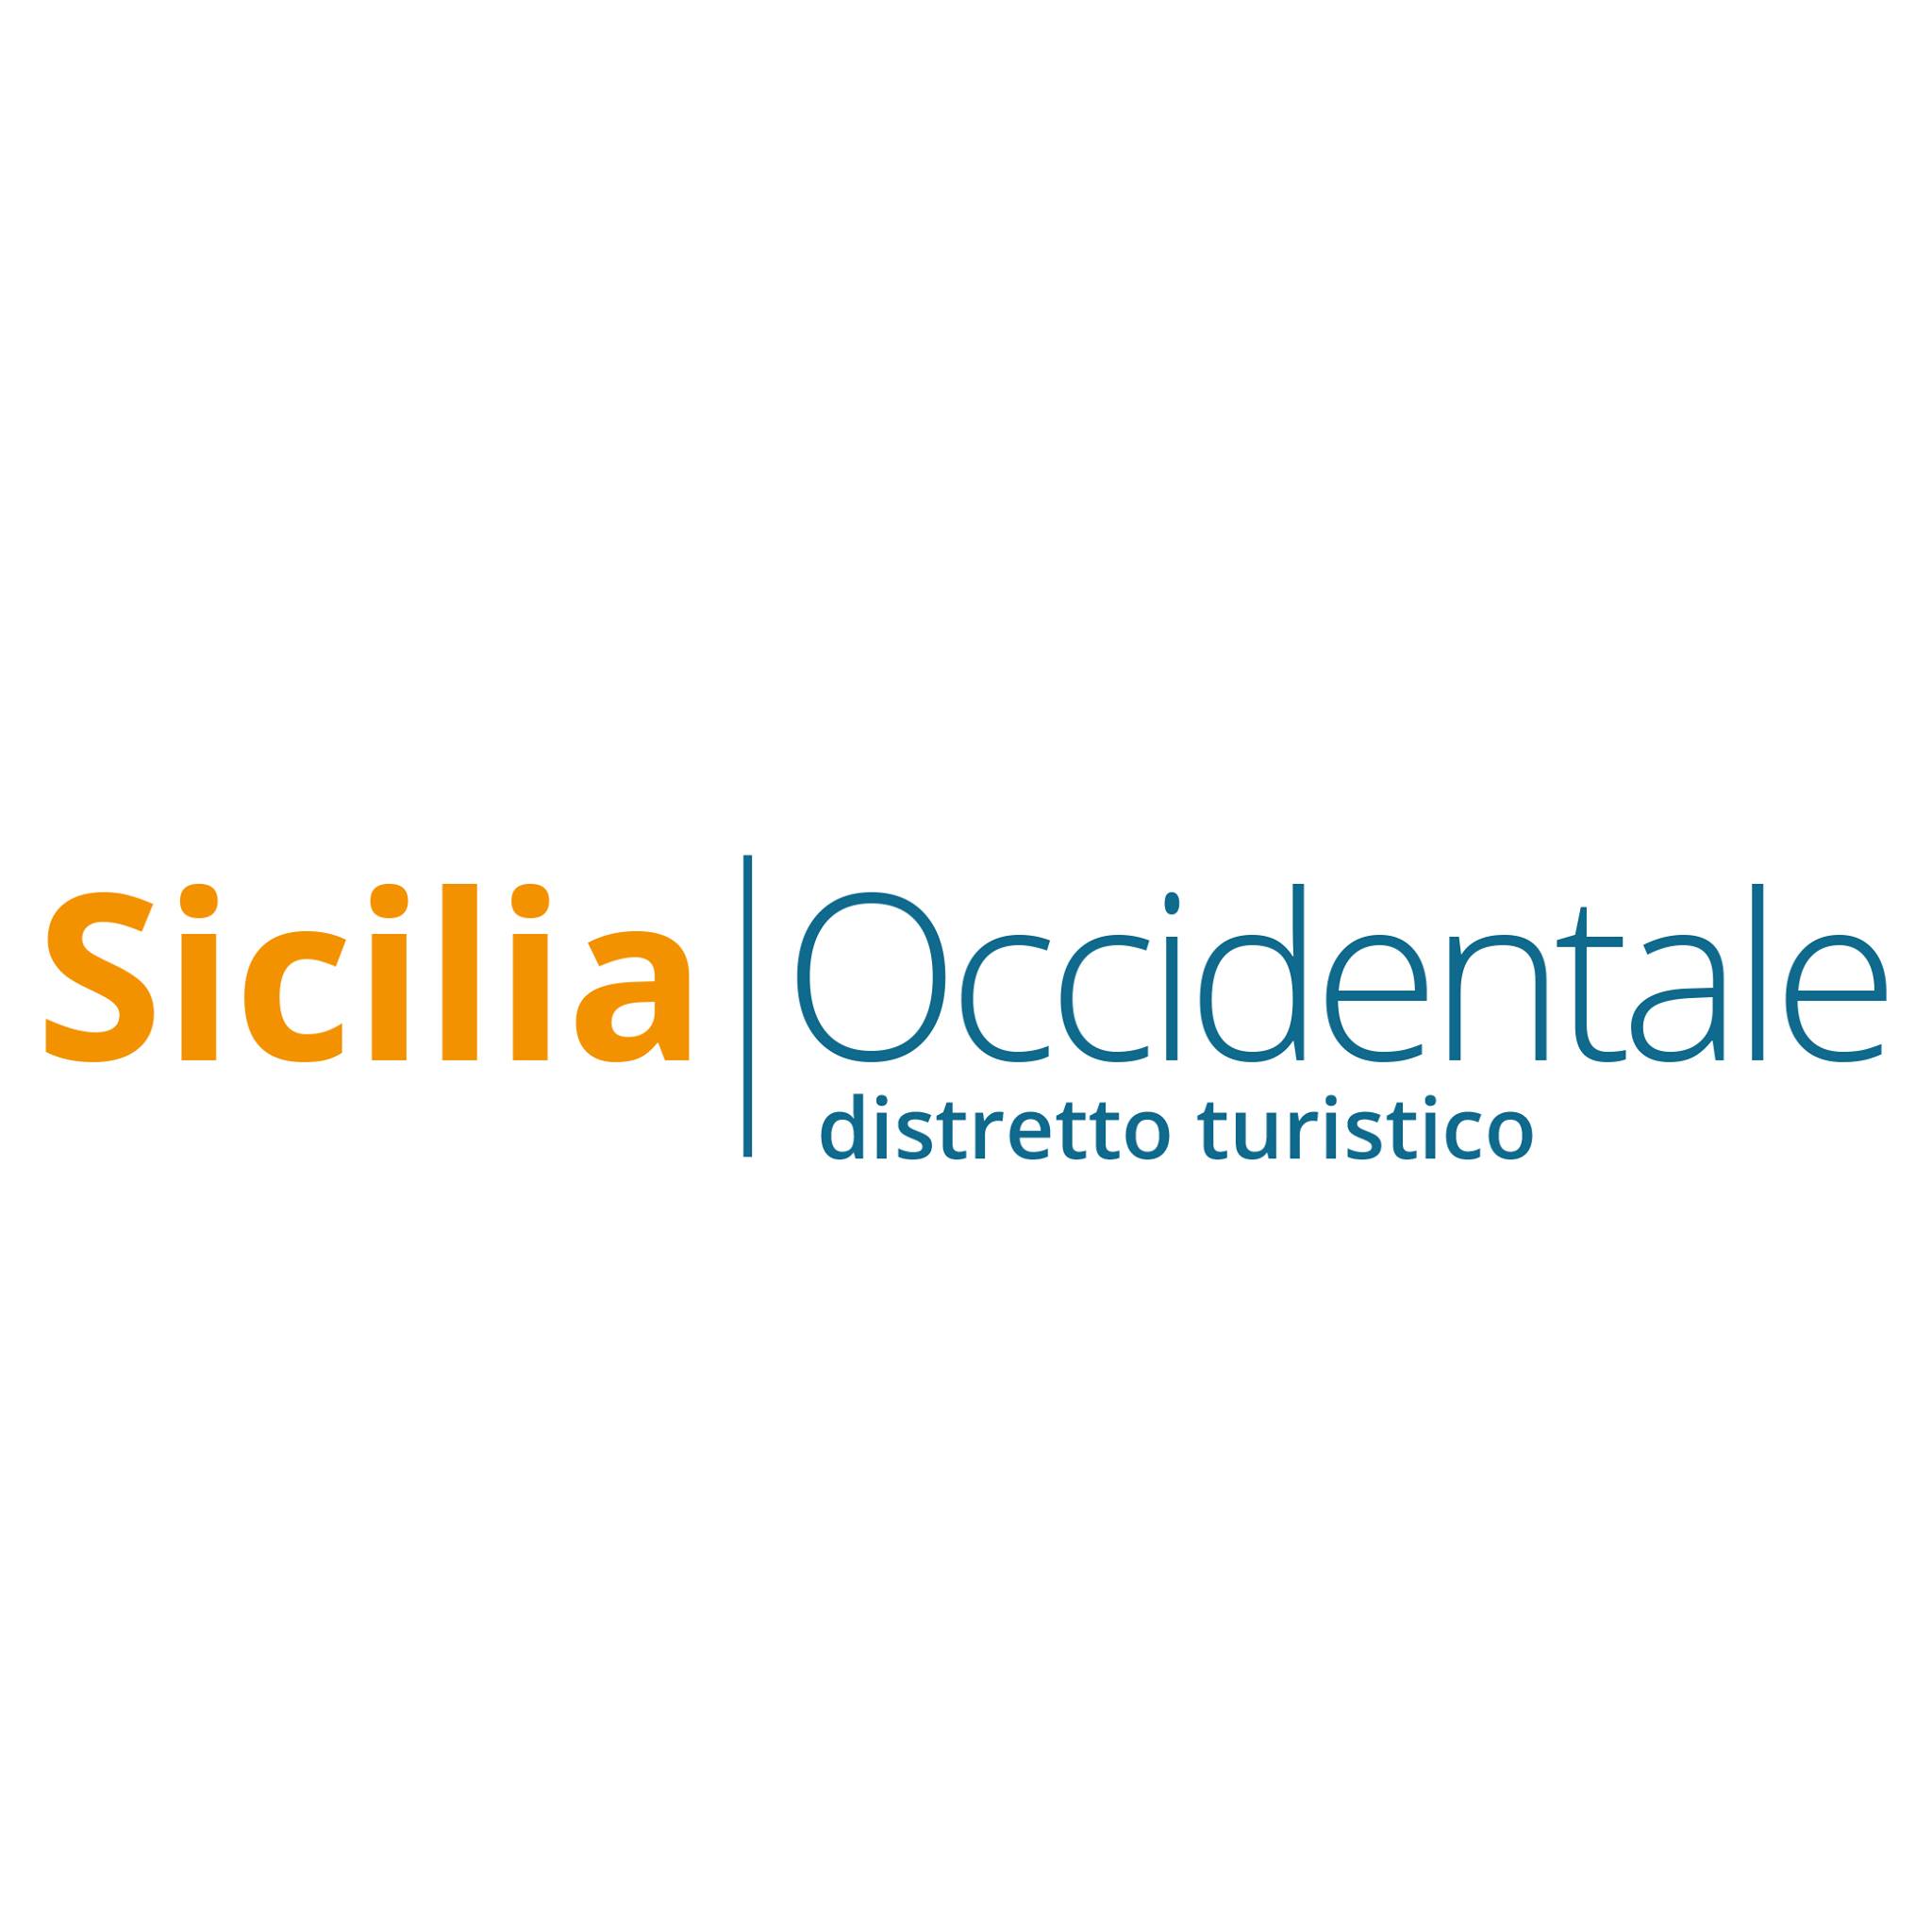 Distretto Turistico Sicilia Occidentale, incontro per albergatori e operatori del settore